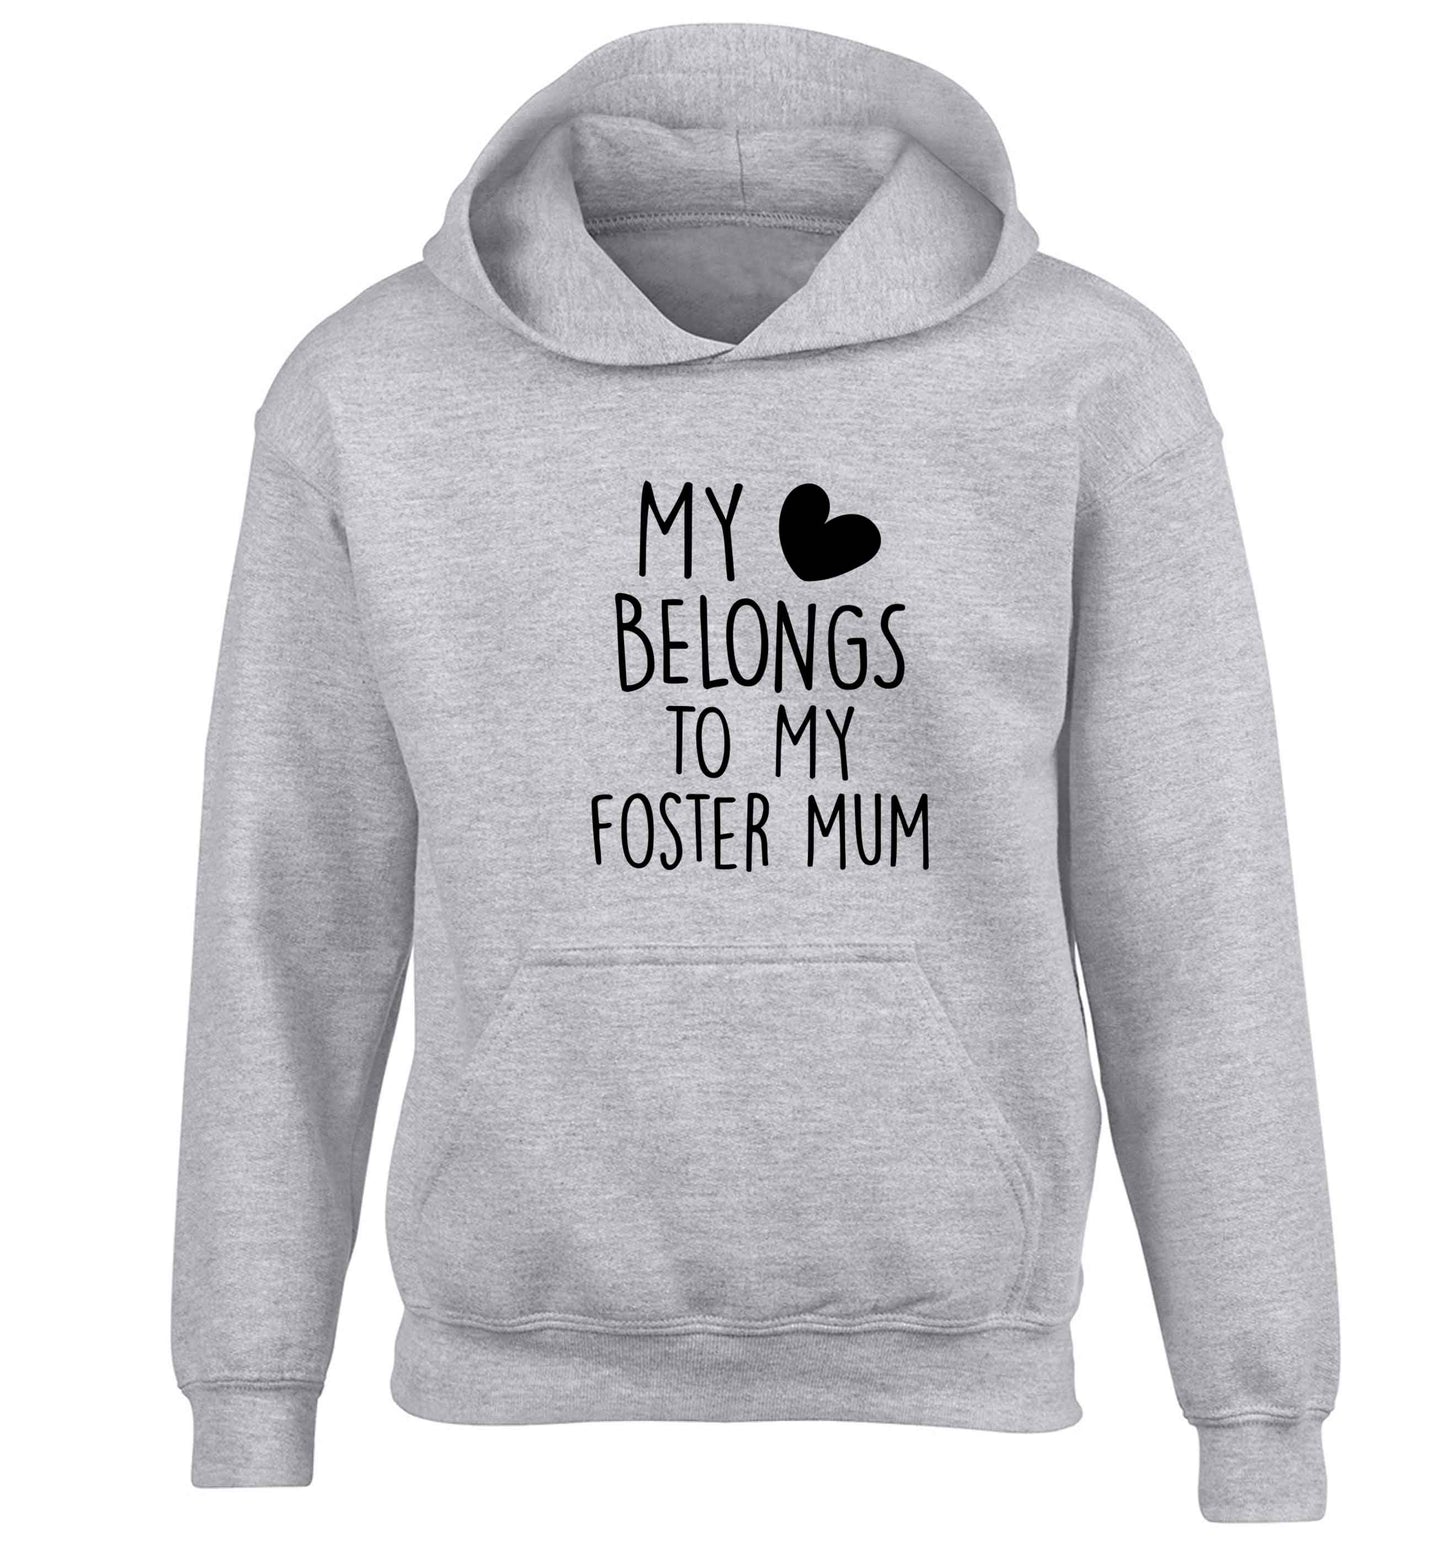 My heart belongs to my foster mum children's grey hoodie 12-13 Years